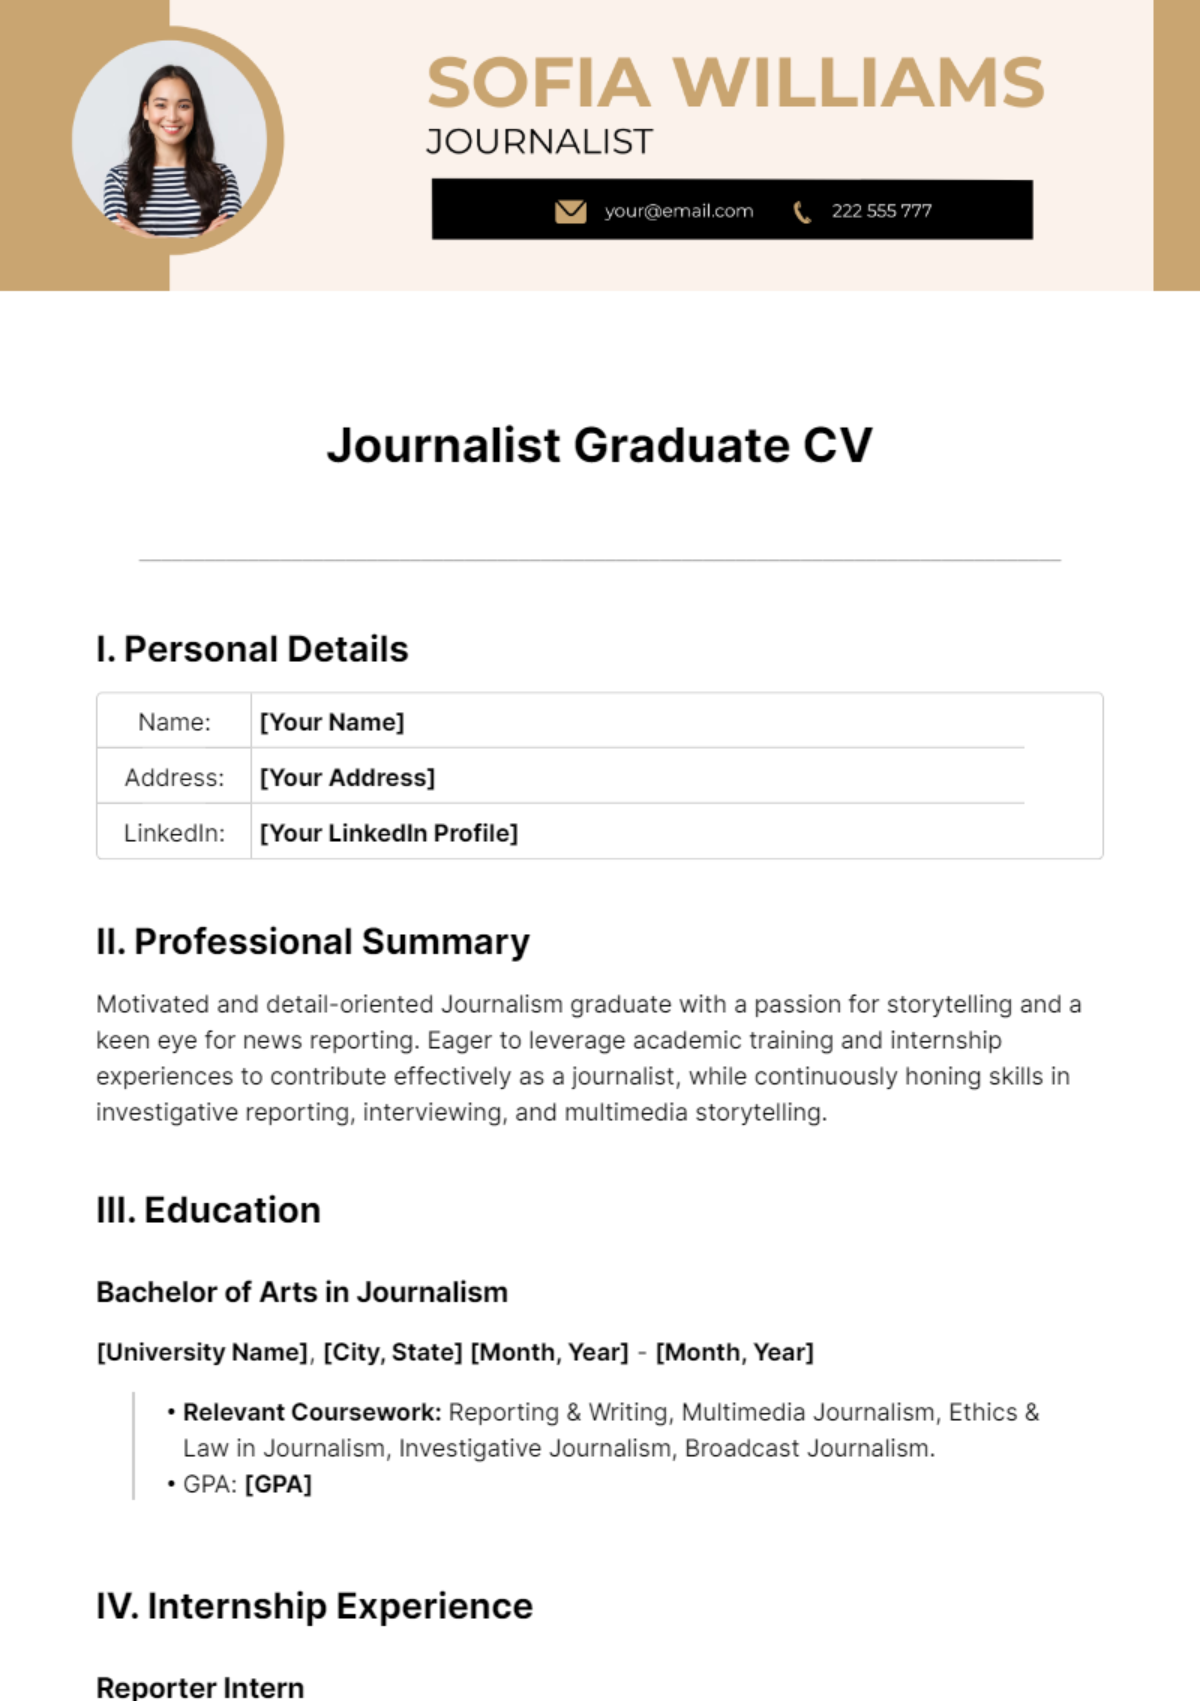 Journalist Graduate CV Template